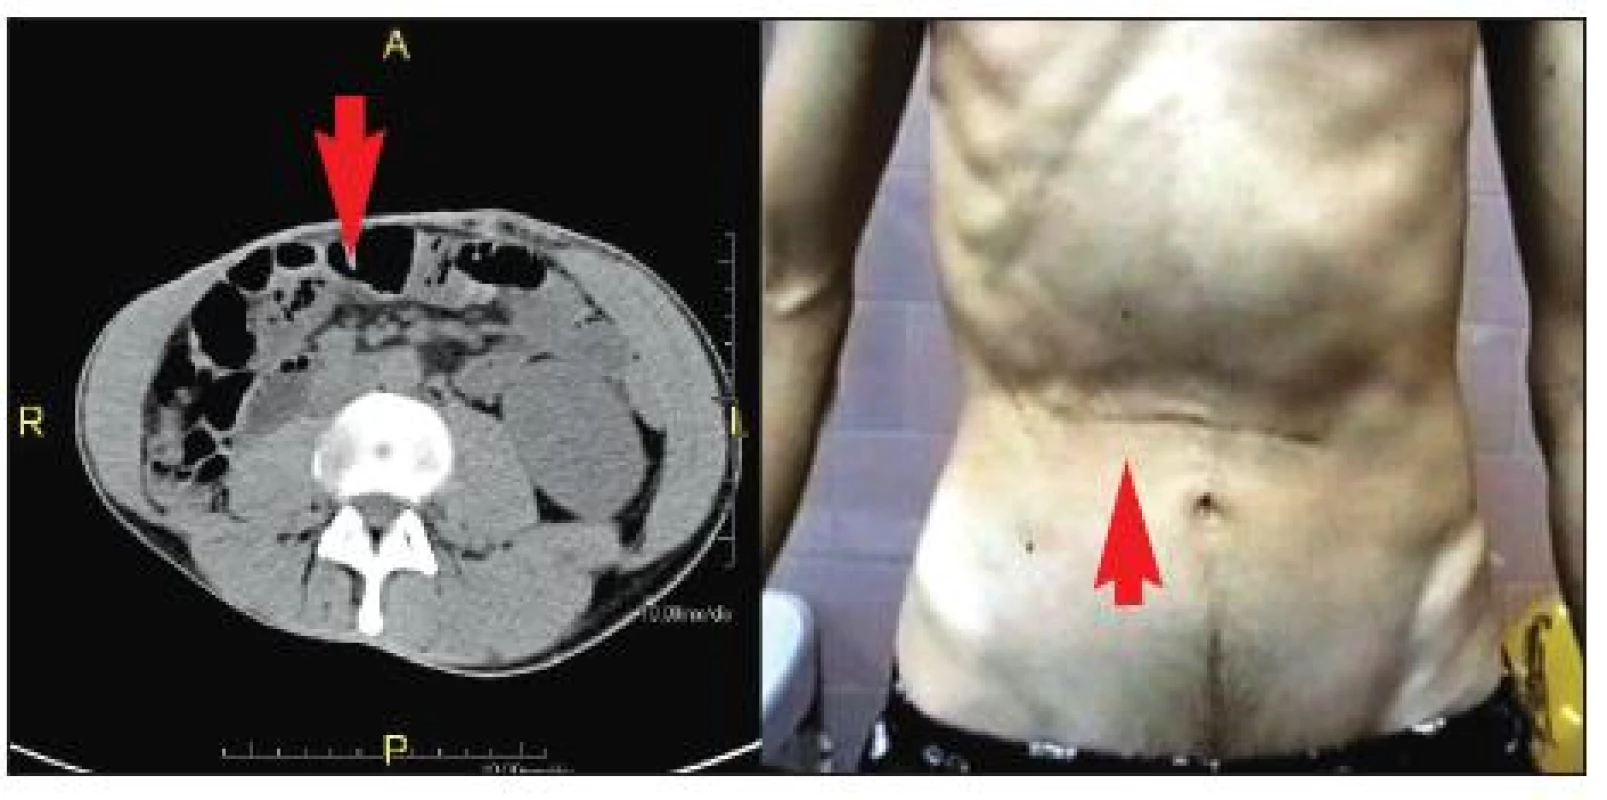 Atrofie pravého m. rectus abdominis. 29letý pacient s pooperačním poškozením interkostálních nervů Th 8–10
vpravo. Na snímku vlevo je patrná výrazná atrofie pravého m. rectus abdominis (označeno šipkami) ve srovnání s levou stranou.  Atrofie je zřejmá i při pohledu na břišní stěnu v pravém horním břišním kvadrantu (snímek vpravo).